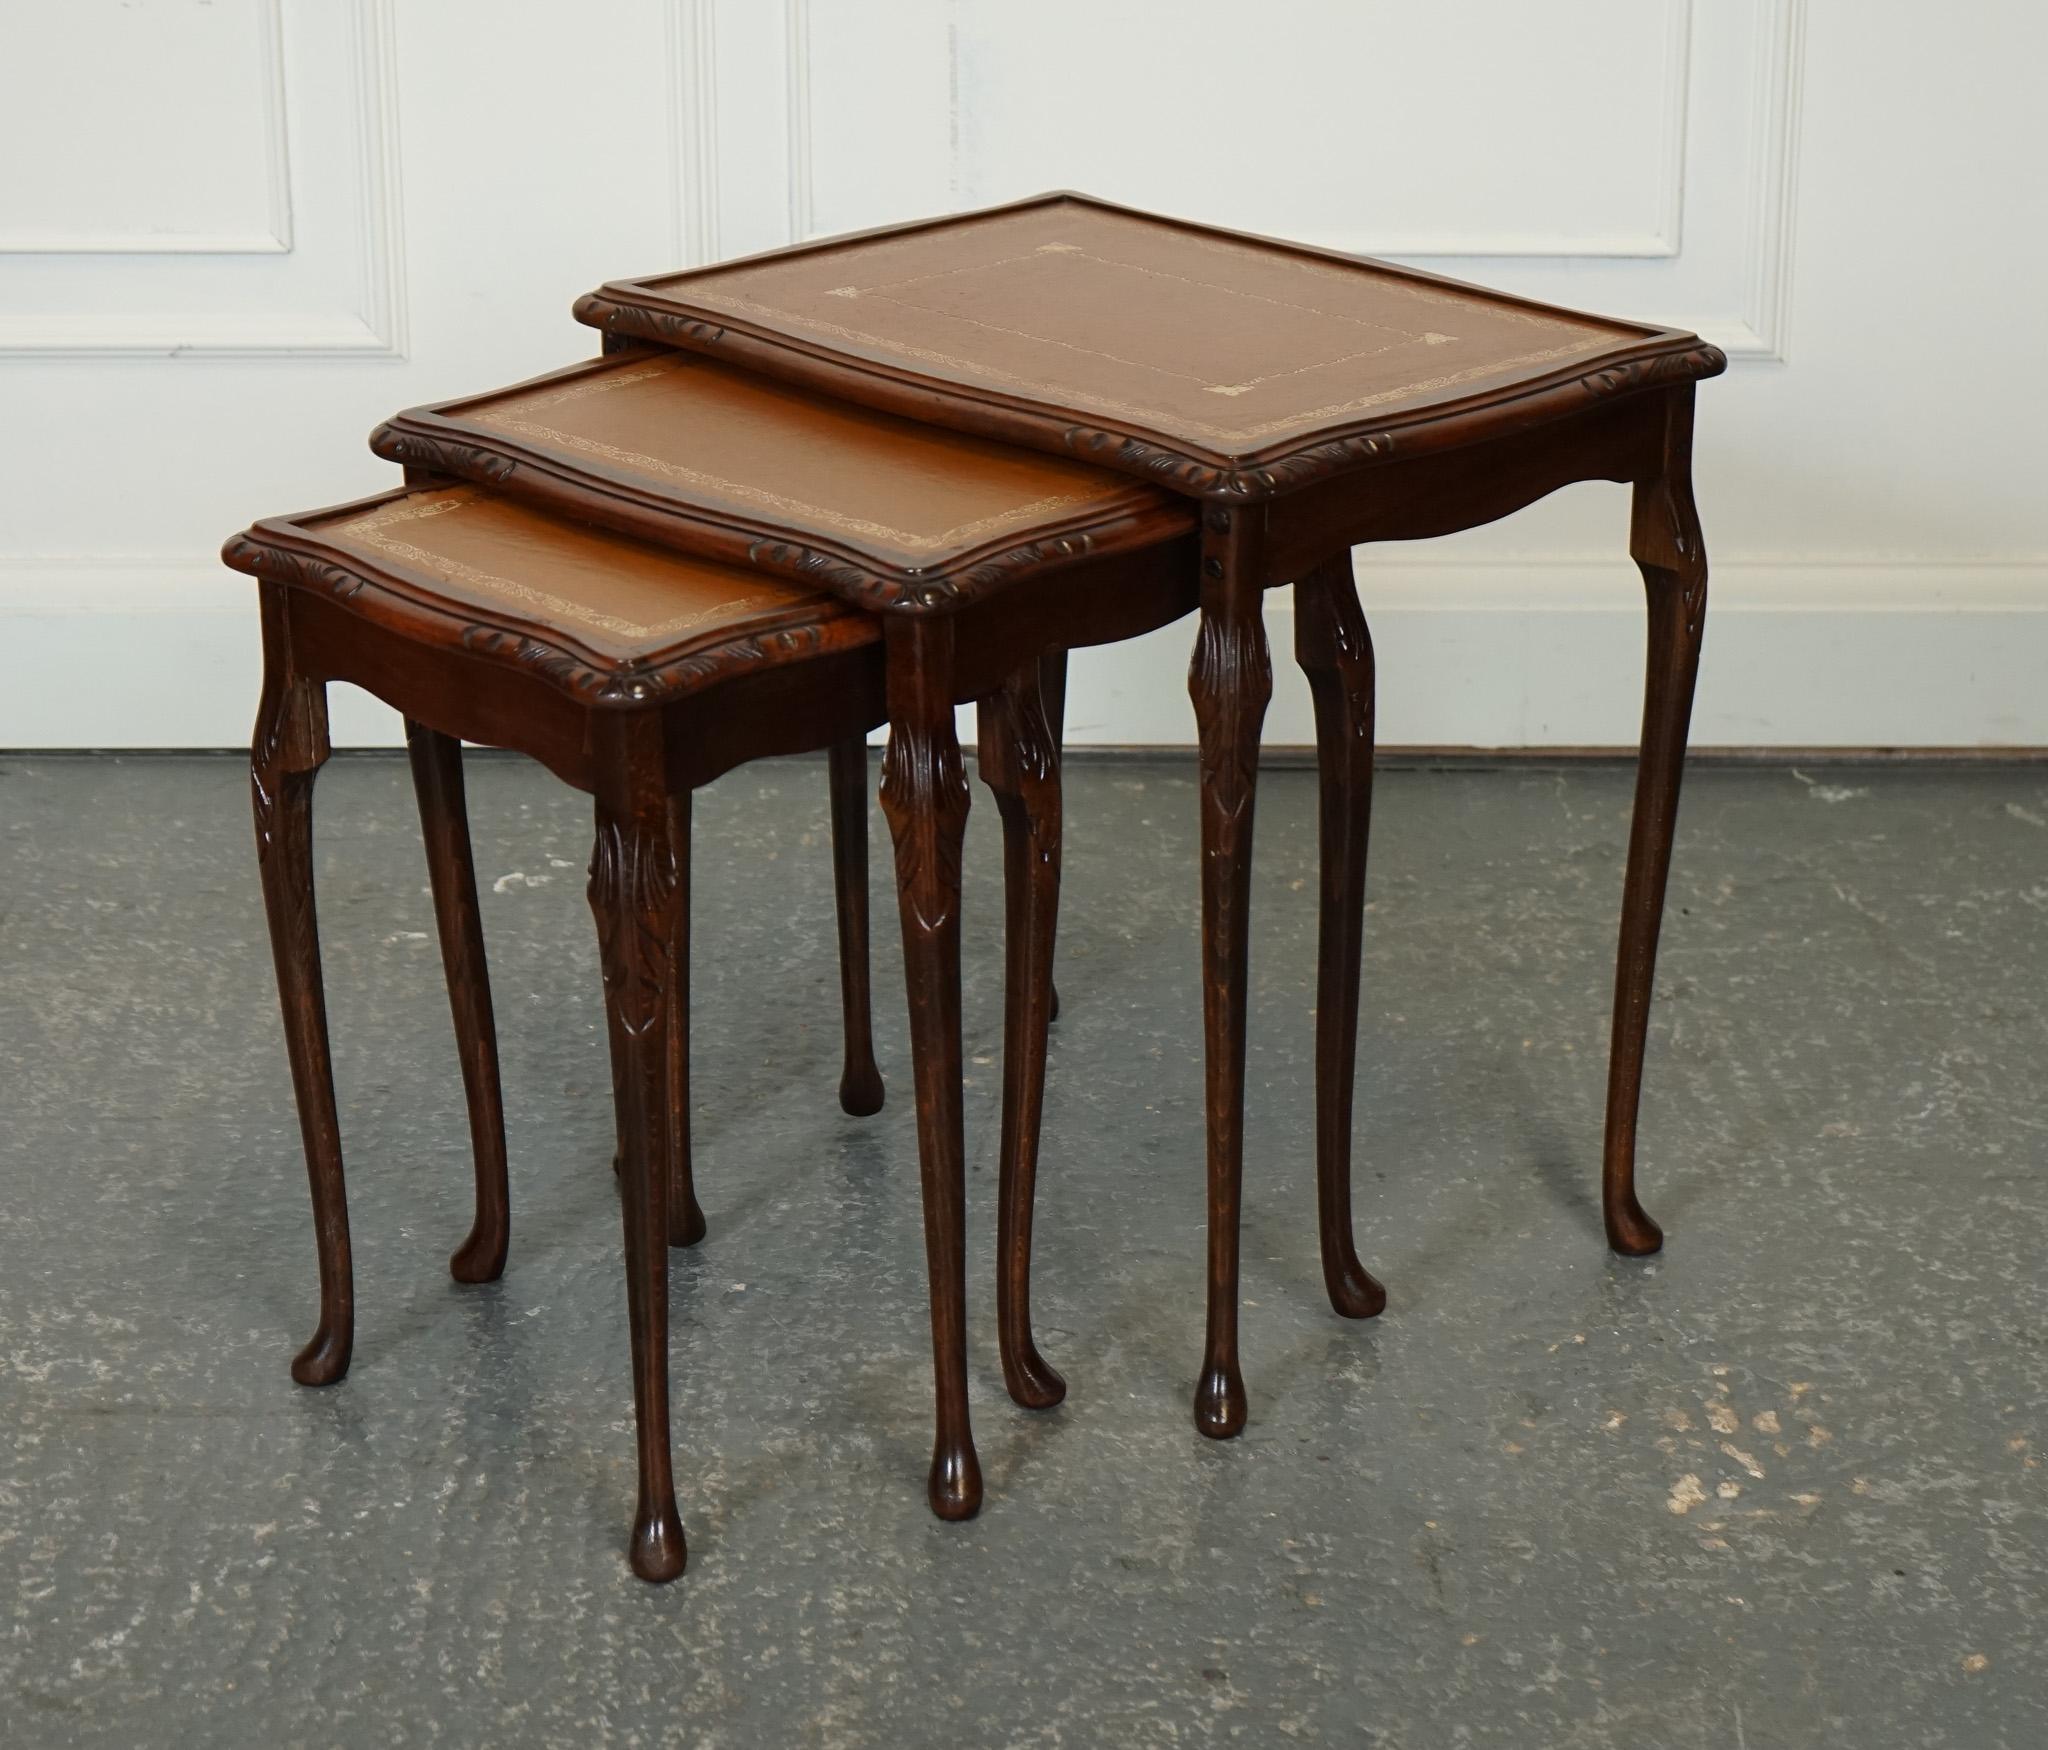 Antiquitäten aus London



Wir freuen uns, dieses schöne Set von Nesting Table mit braunen Lederplatten zum Verkauf anbieten zu können.

Ein Vintage-Nest aus Tischen mit Beinen im Queen-Anne-Stil und einer braunen, geprägten Lederplatte ist eine